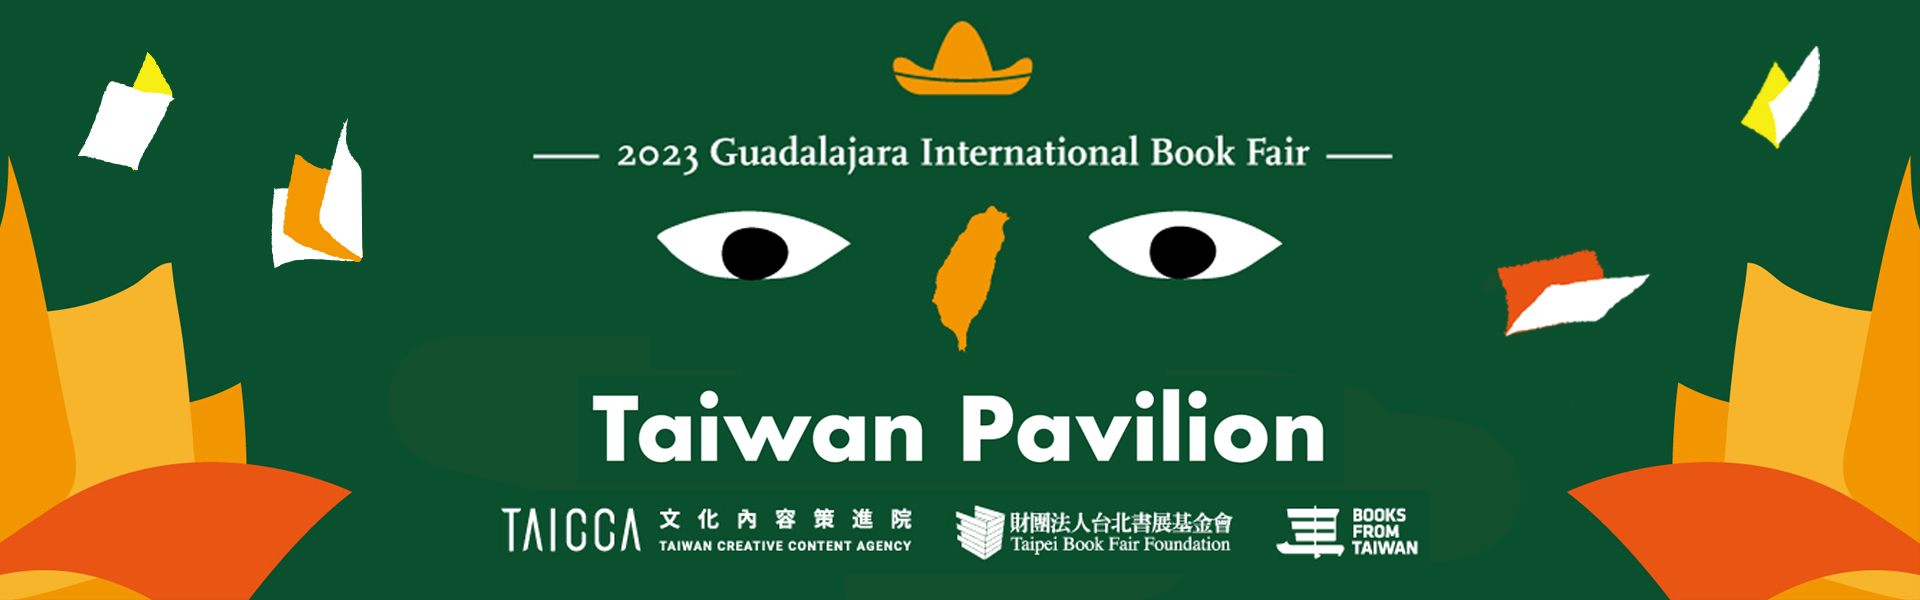 瓜達拉哈拉國際書展